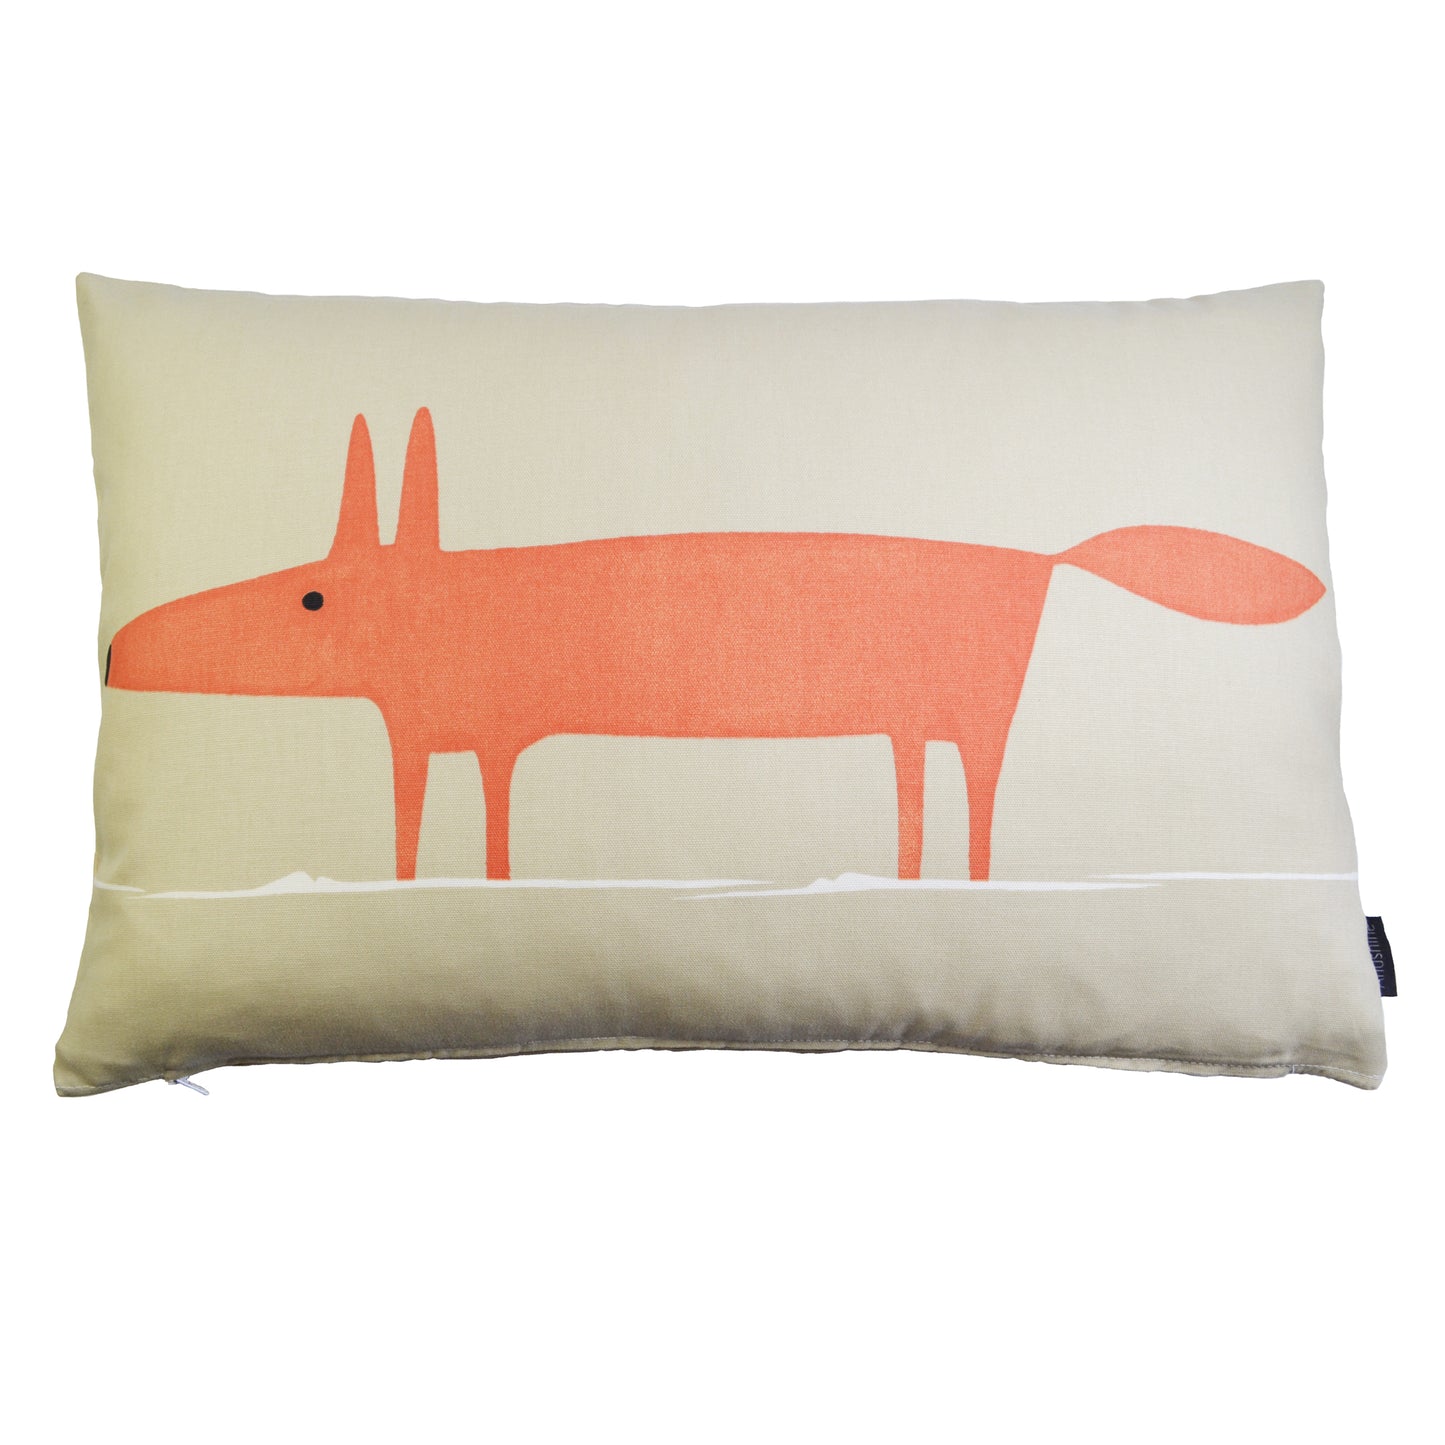 Mr Fox cushion/cover - Beige